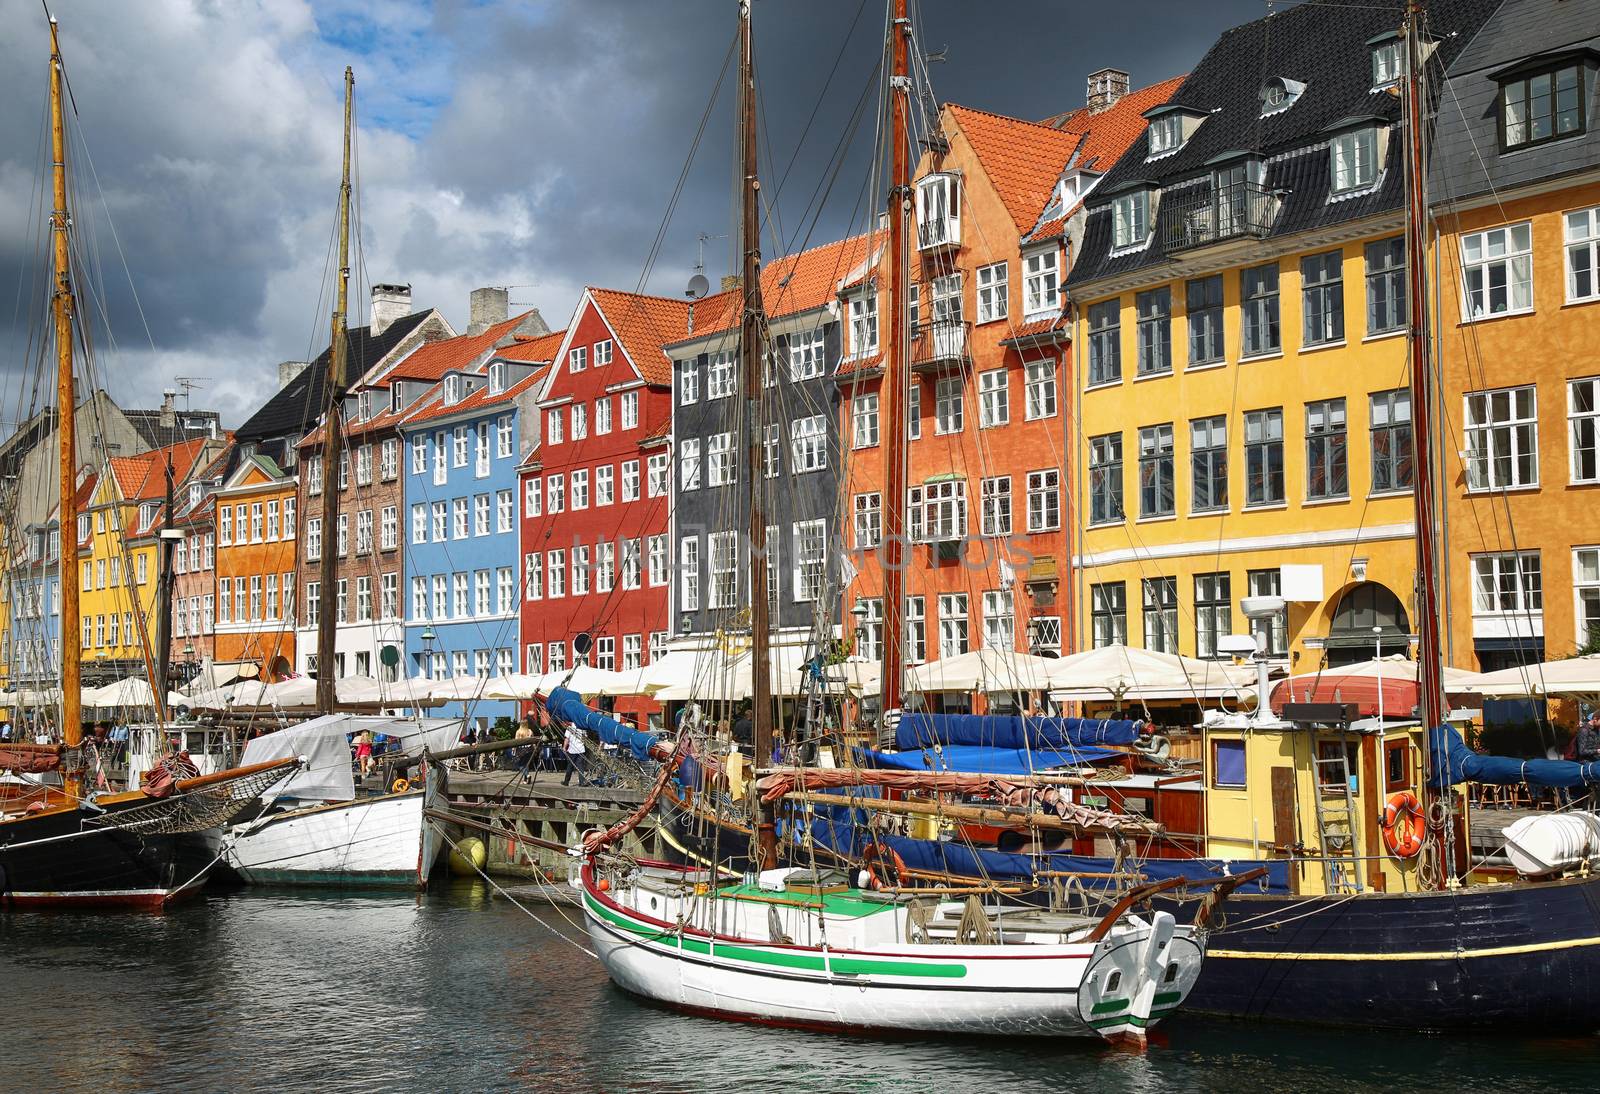 Nyhavn (new Harbor) in Copenhagen, Denmark by vladacanon